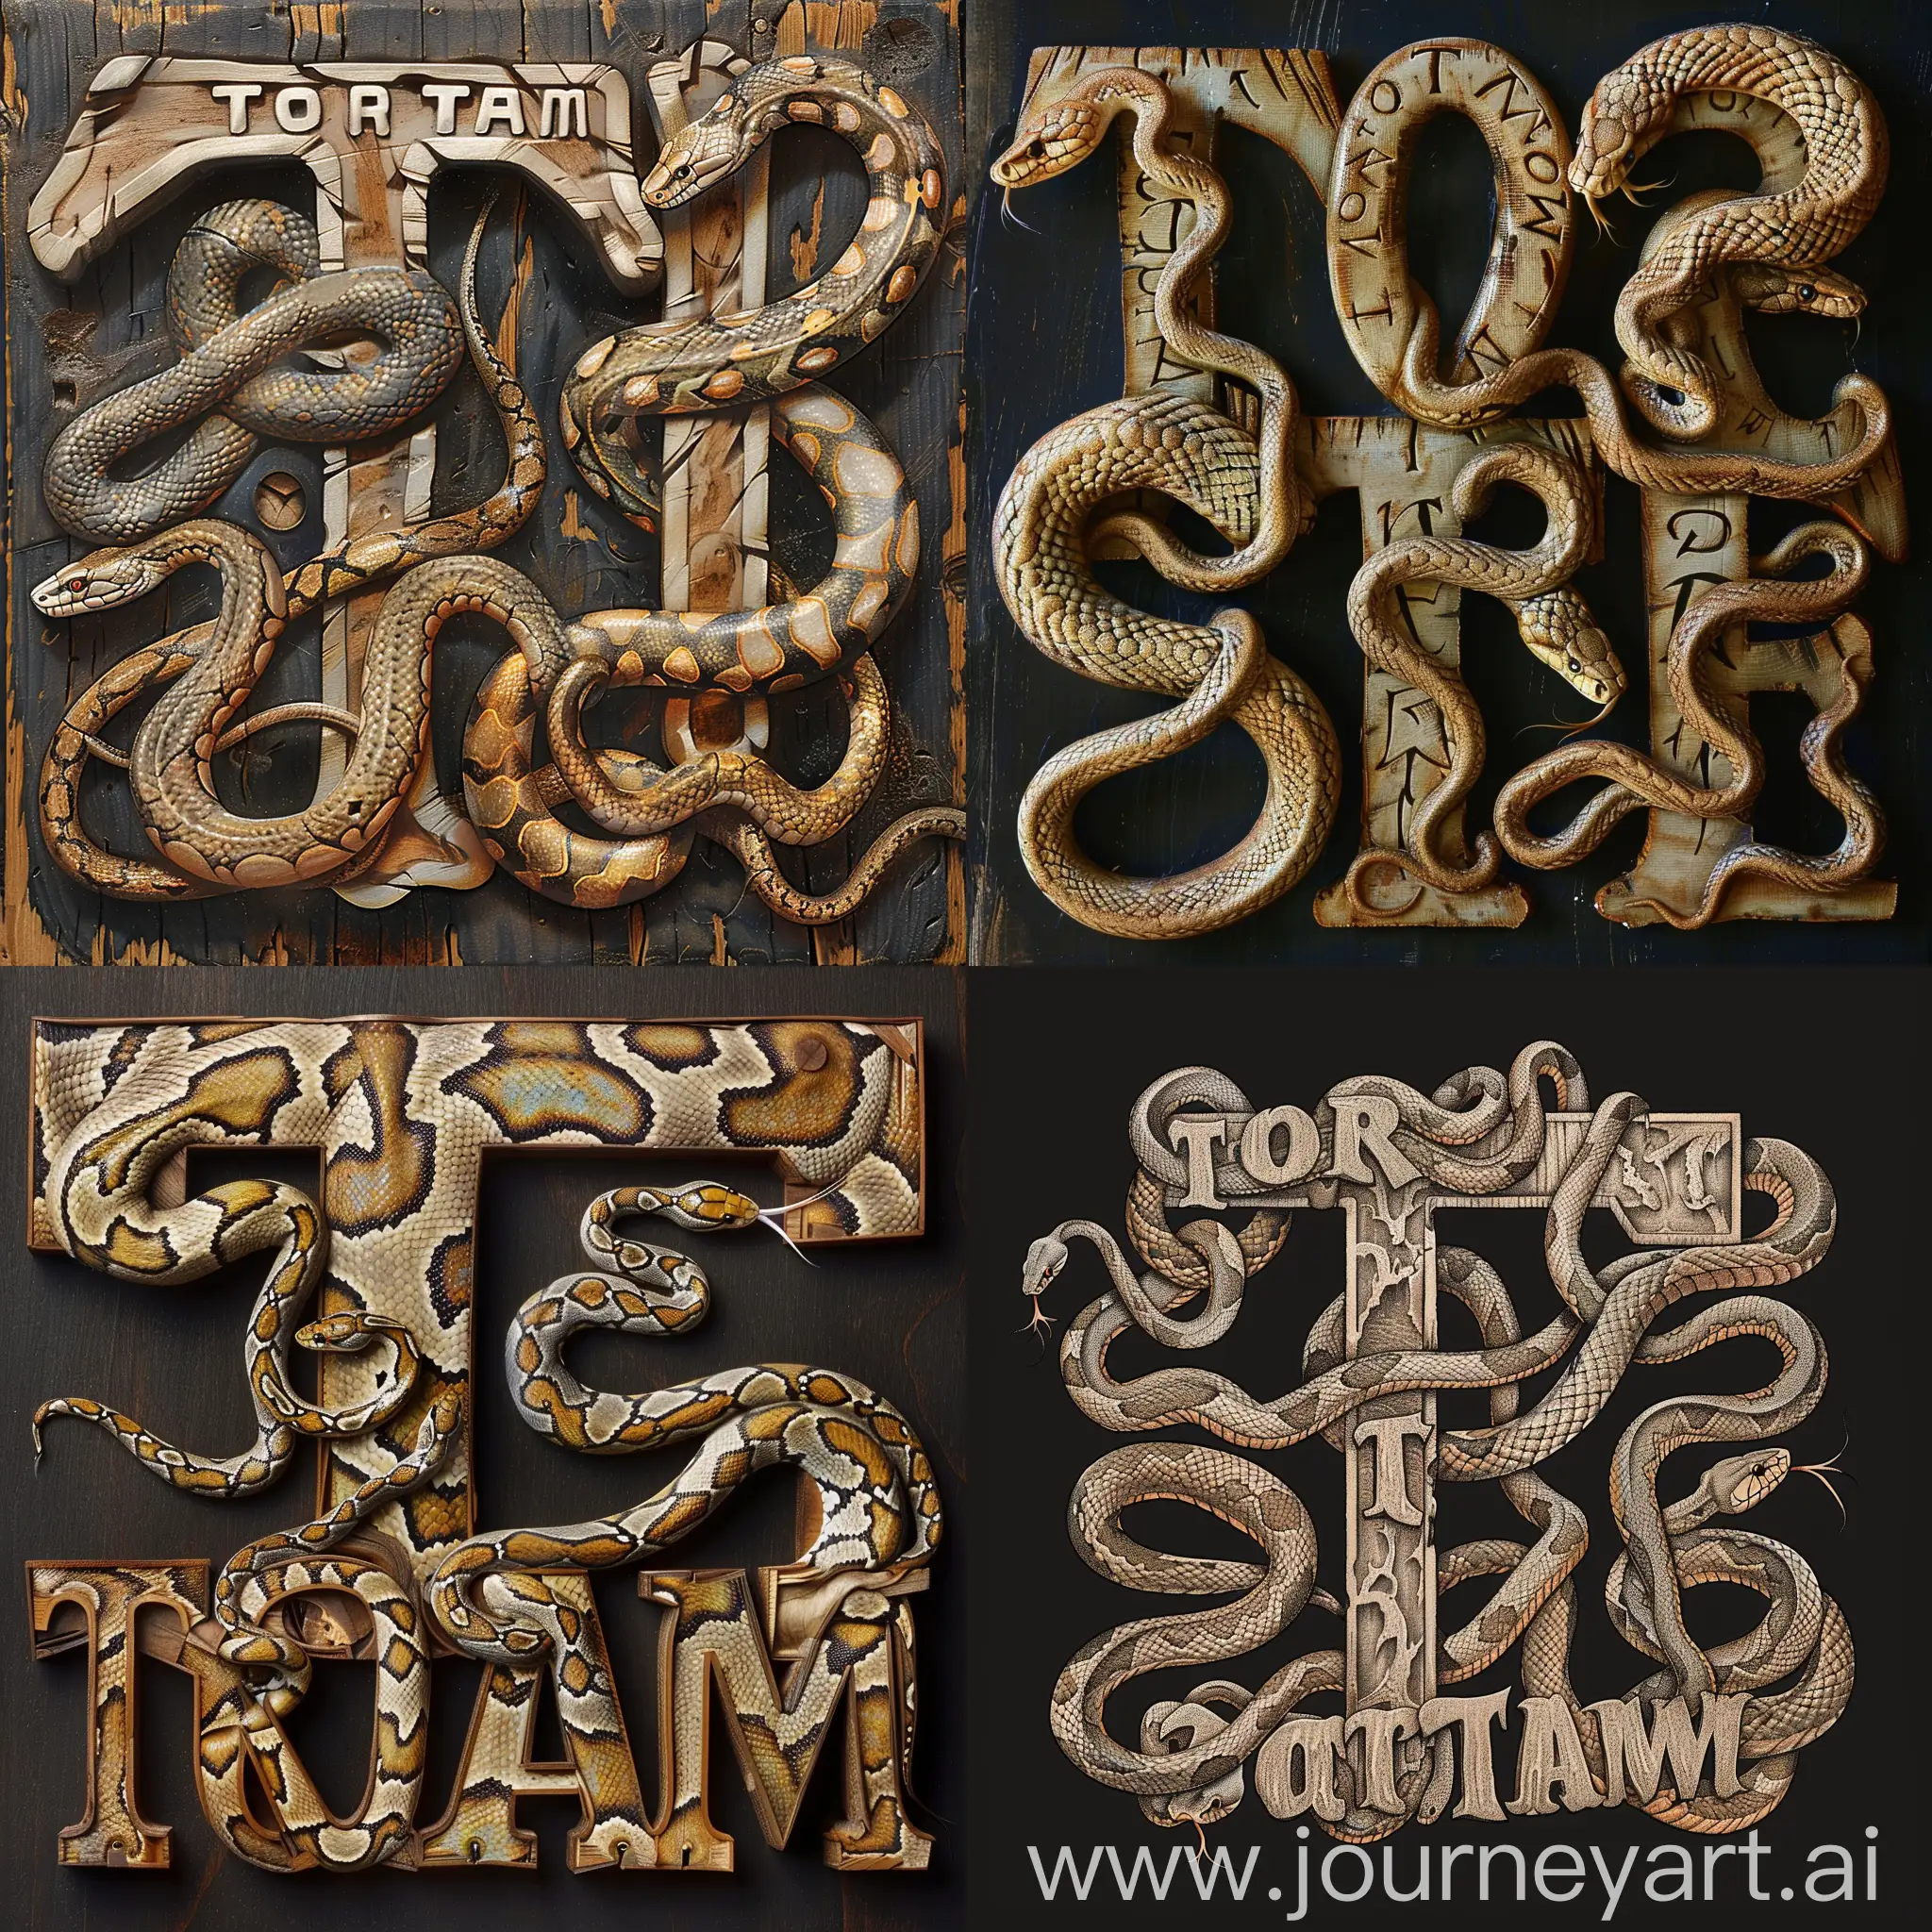 Сгенирируй изображение с надписью TorTam, где змеи обвивают буквы T одна первую букву, вторая четвертую